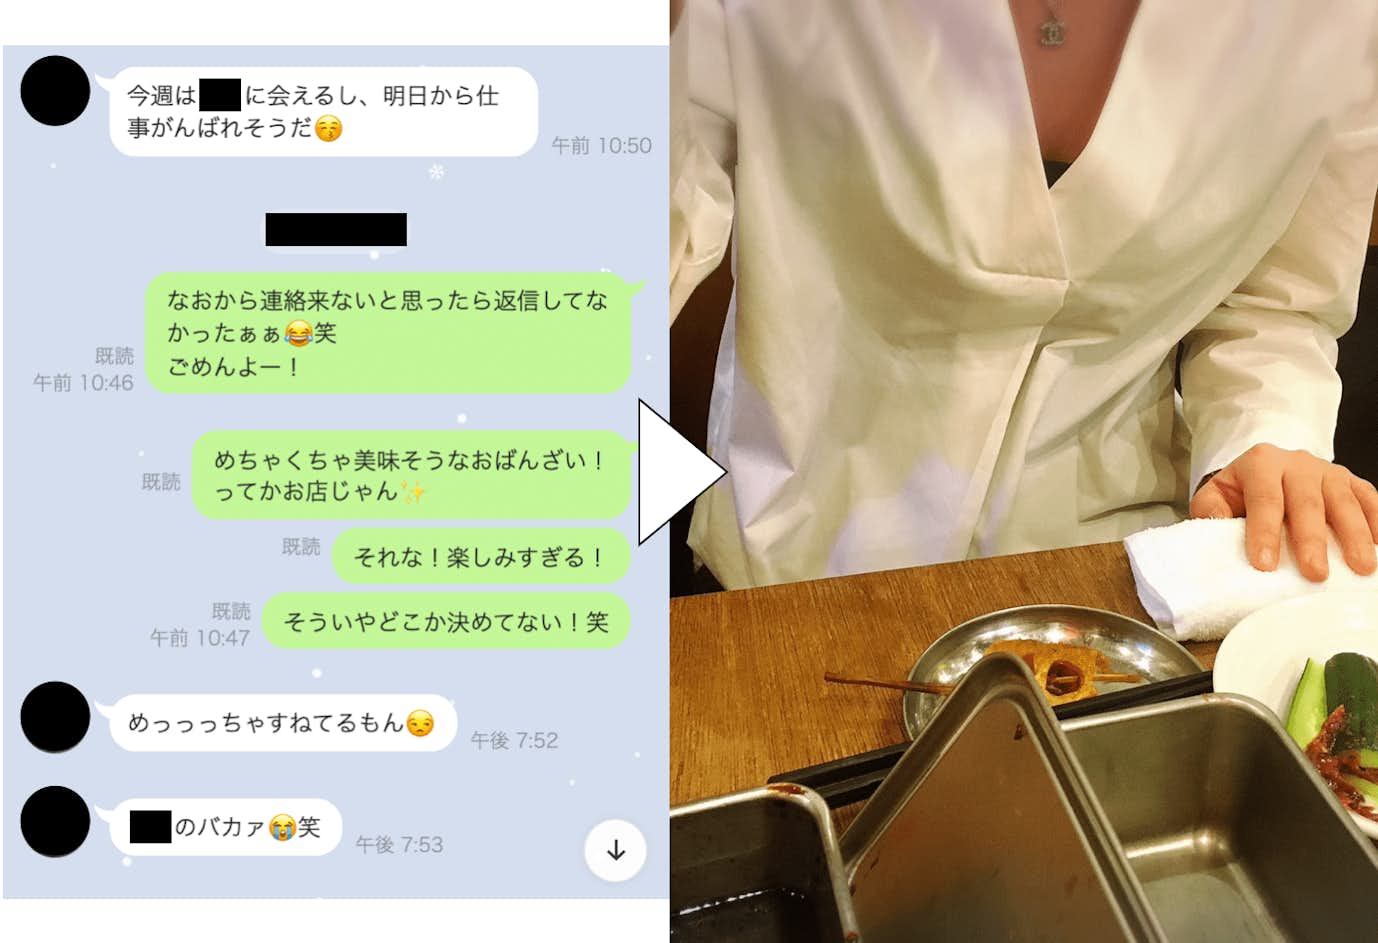 ハッピーメールを使って鳥取で実際に出会った女性の写真とLINEスクショ